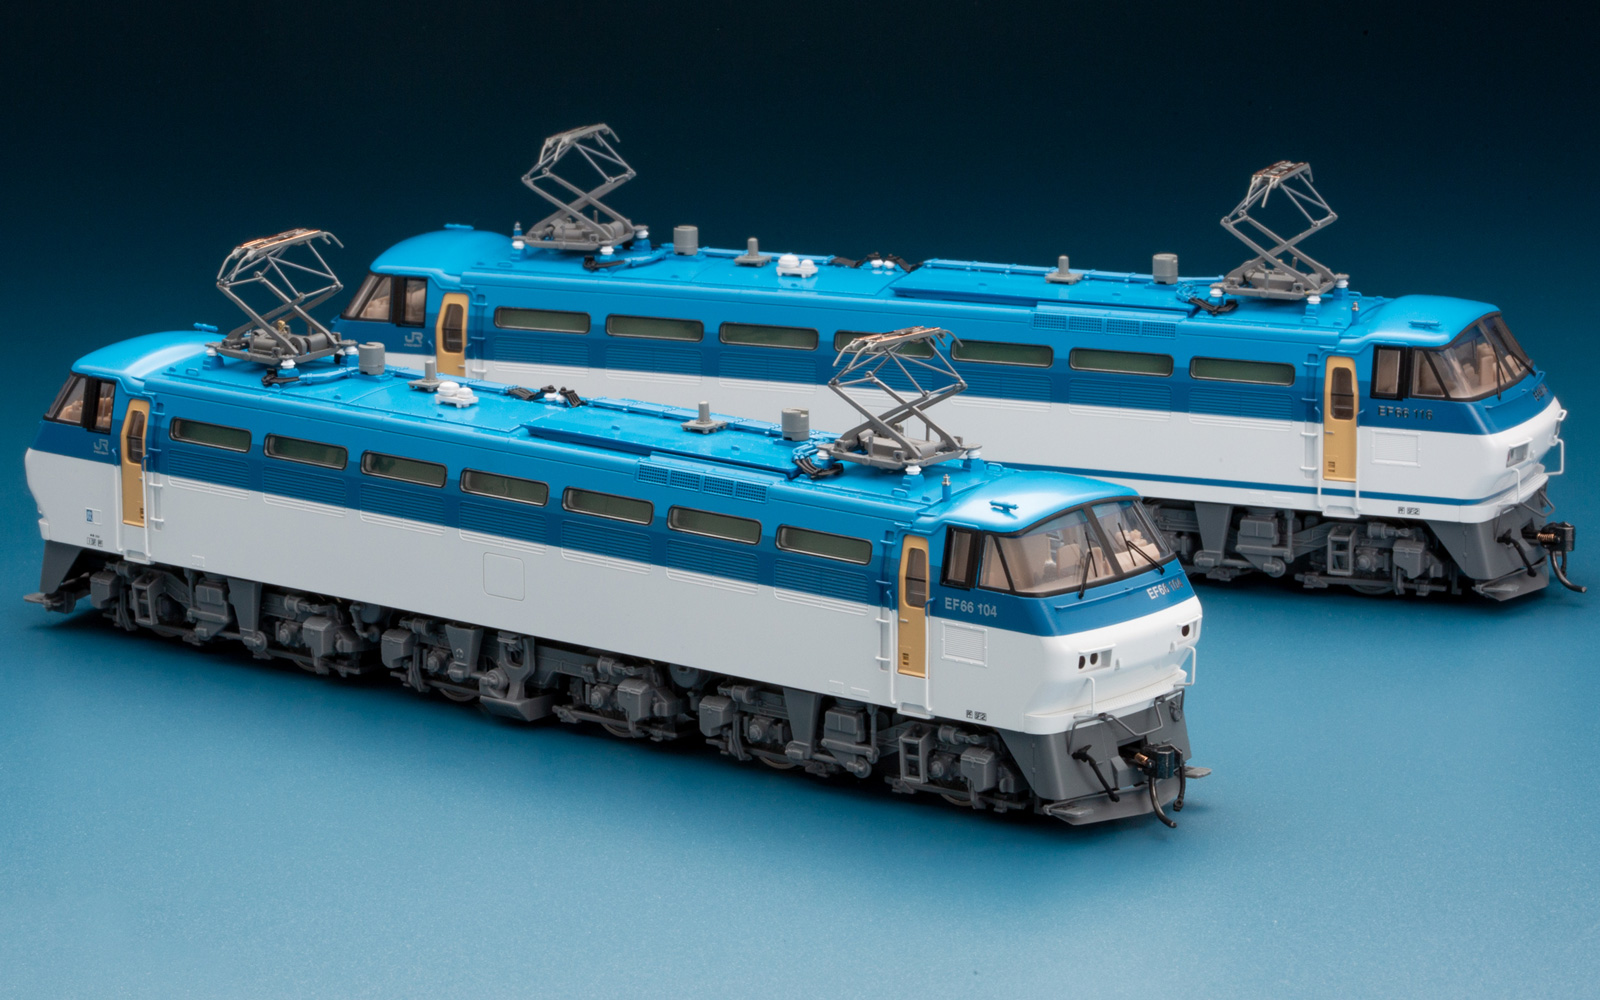 21456円 数々の賞を受賞 TOMIX HOゲージ JR EF66 100形 前期型 HO2024 鉄道模型 電気機関車